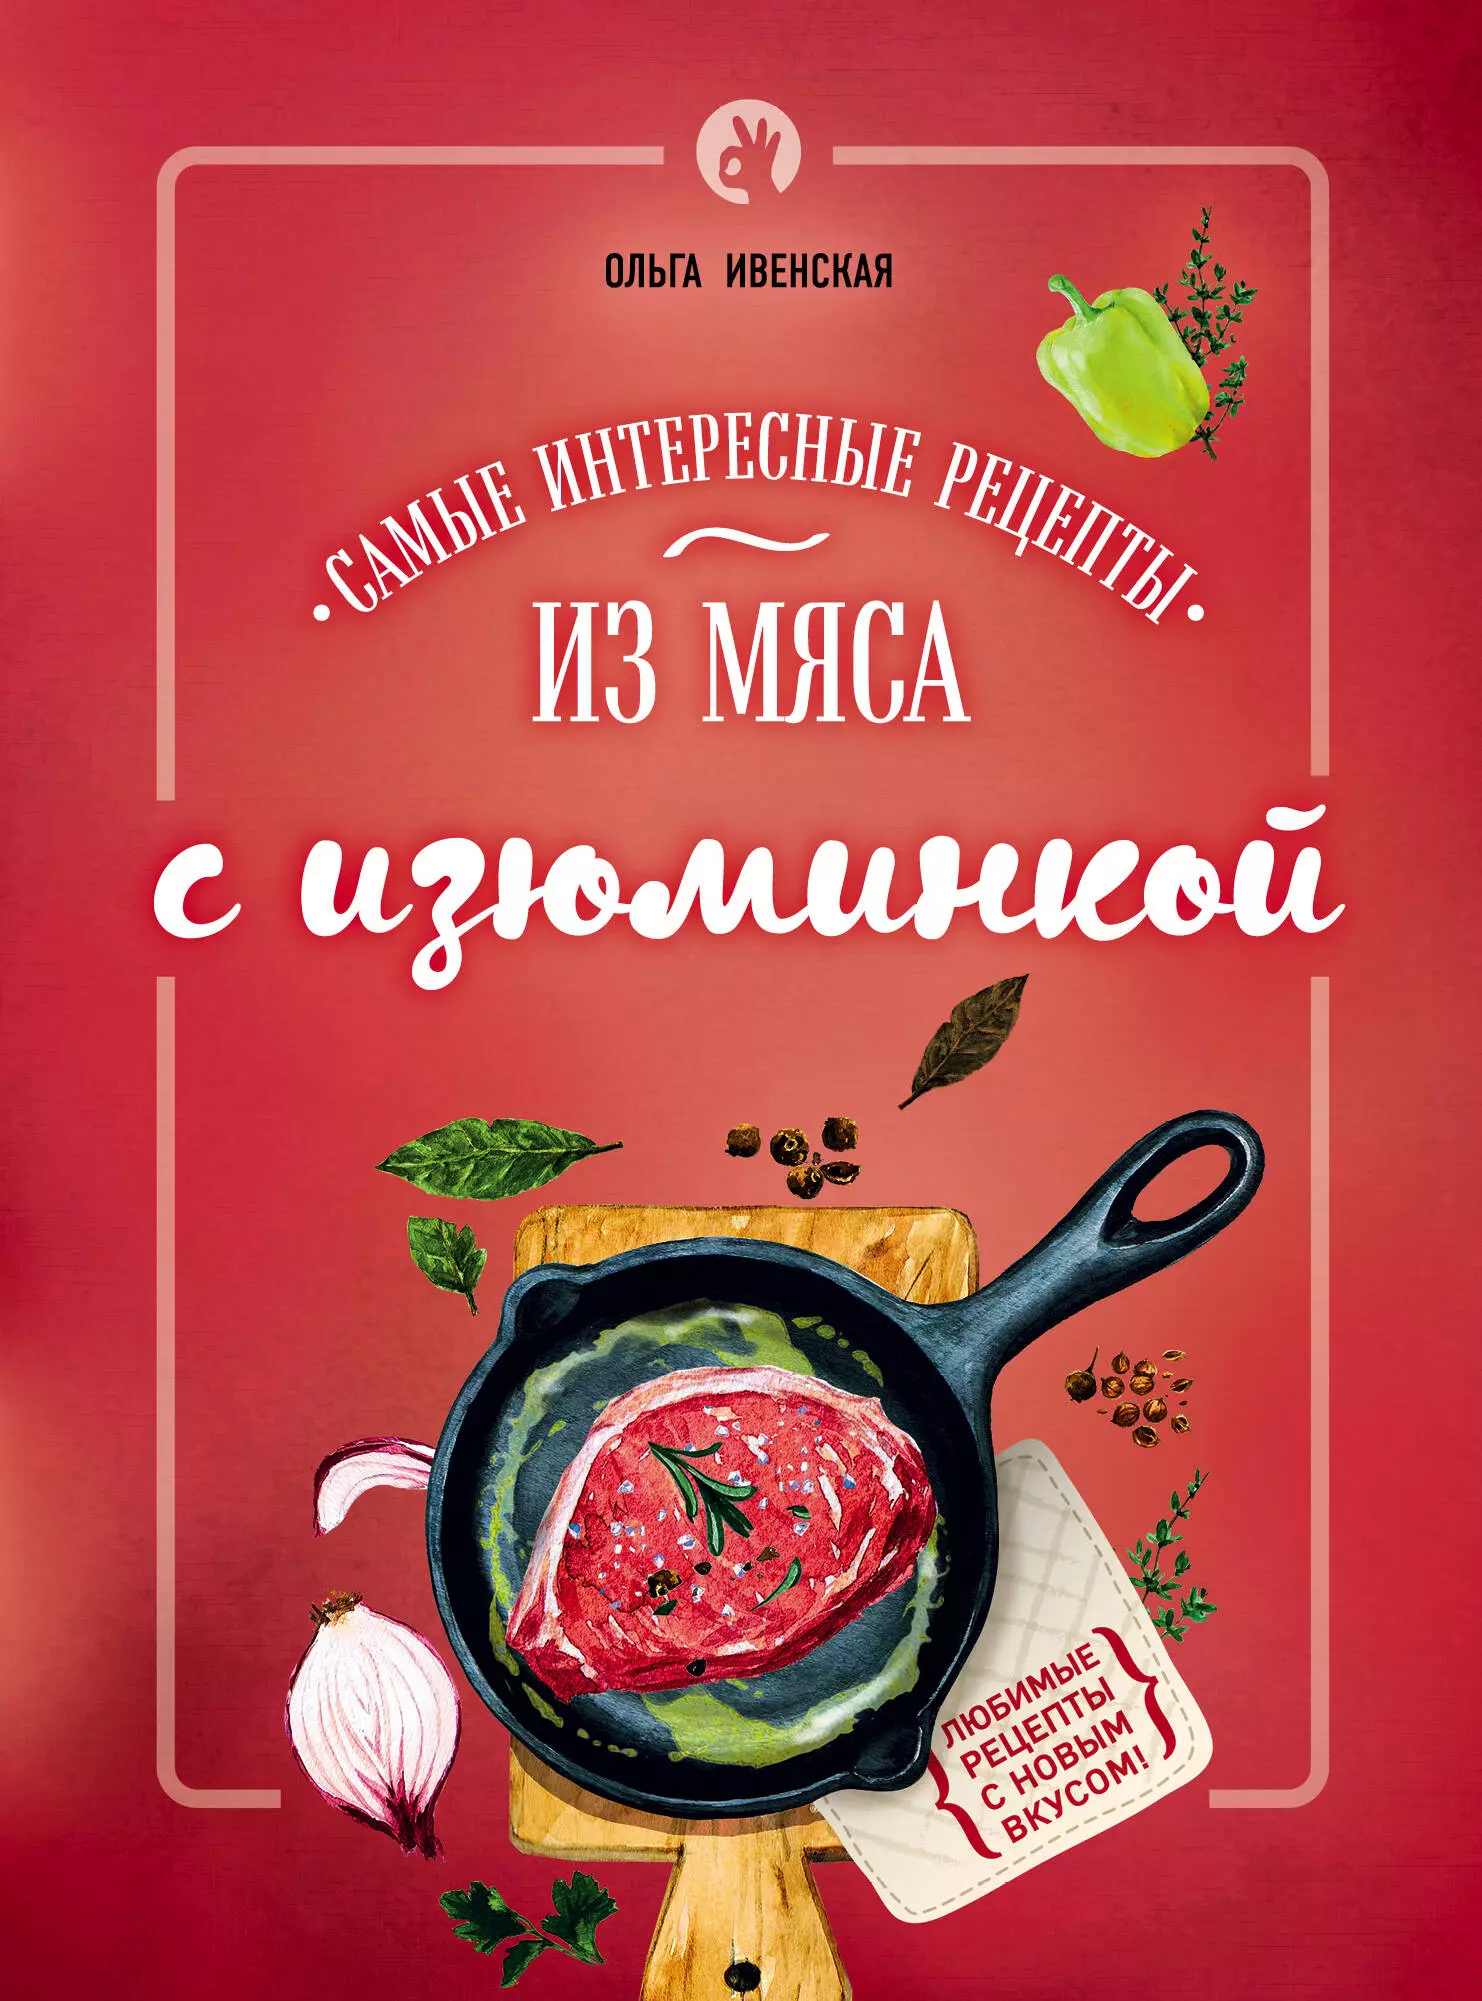 Ивенская Ольга Семеновна - Самые интересные рецепты из мяса с изюминкой